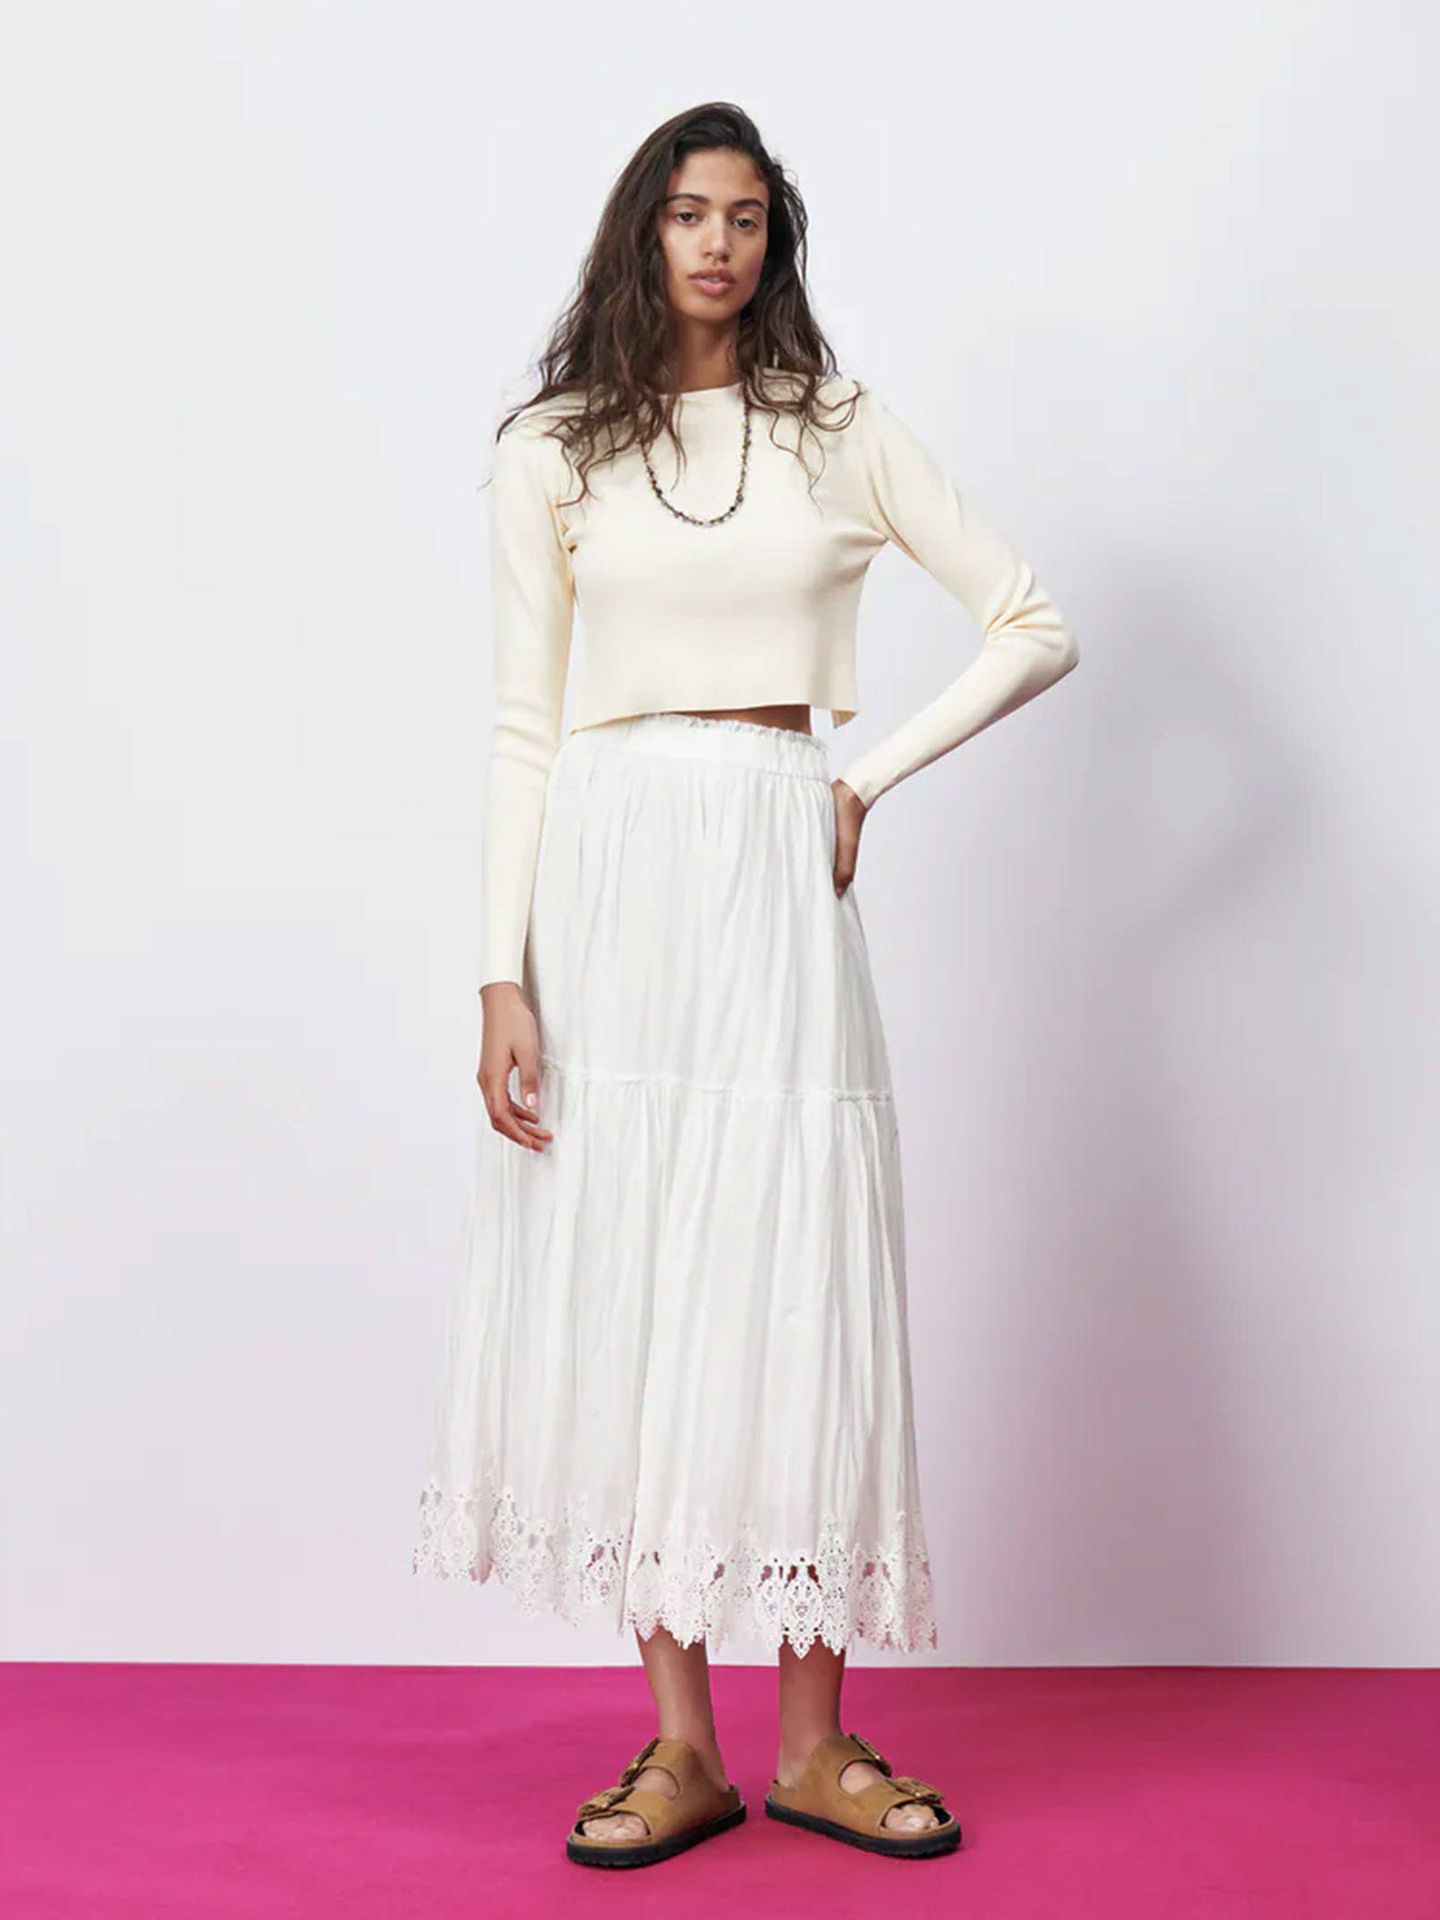 grueso Alacena público 4 faldas largas de Zara cómodas, bonitas y a precio asequible